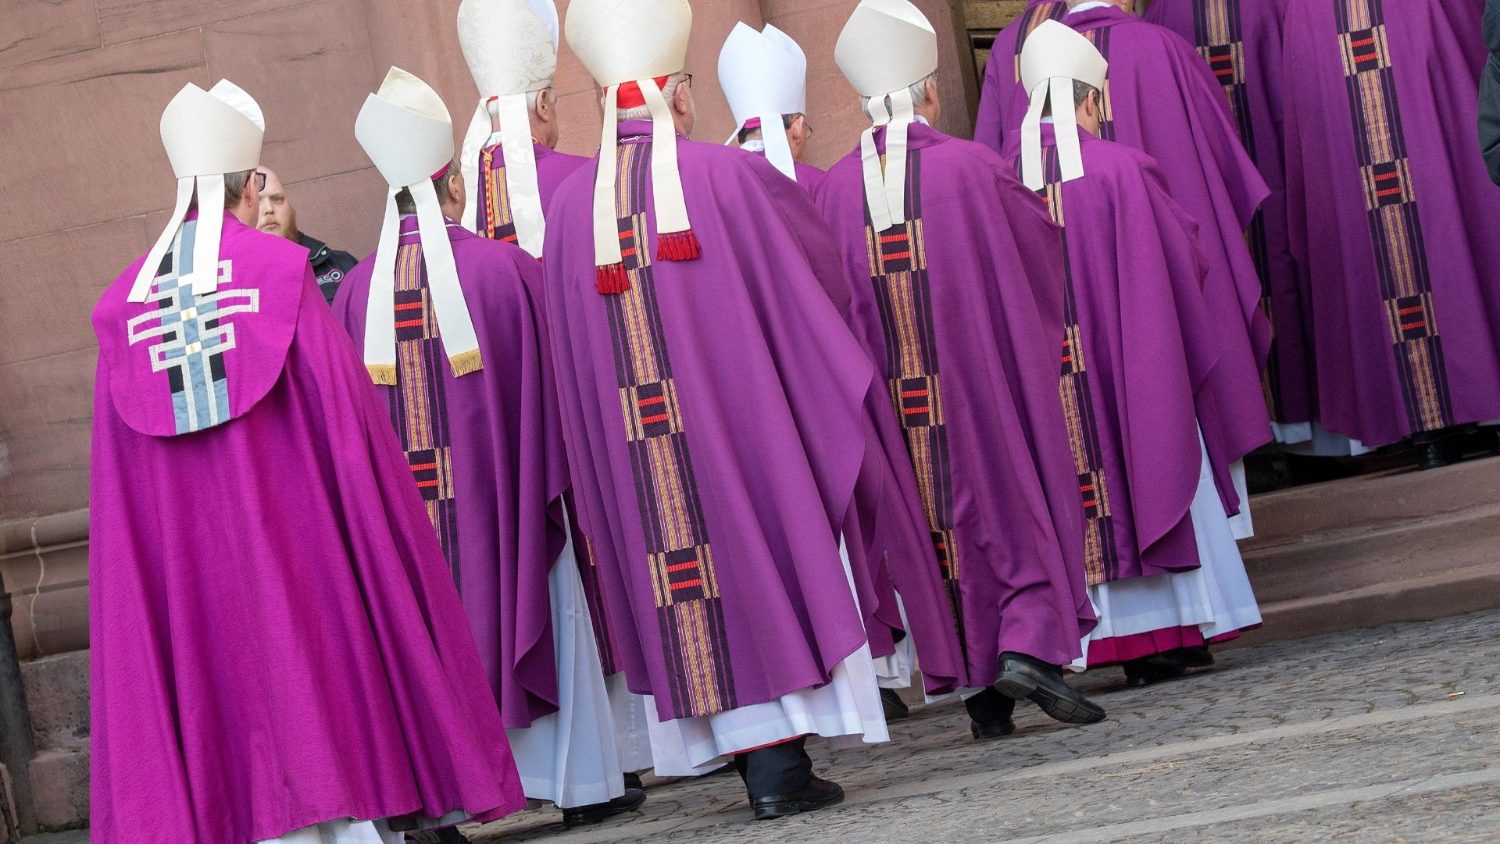  La crise des vocations sacerdotales s’amplifie en Allemagne Cq5dam.thumbnail.cropped.1500.844